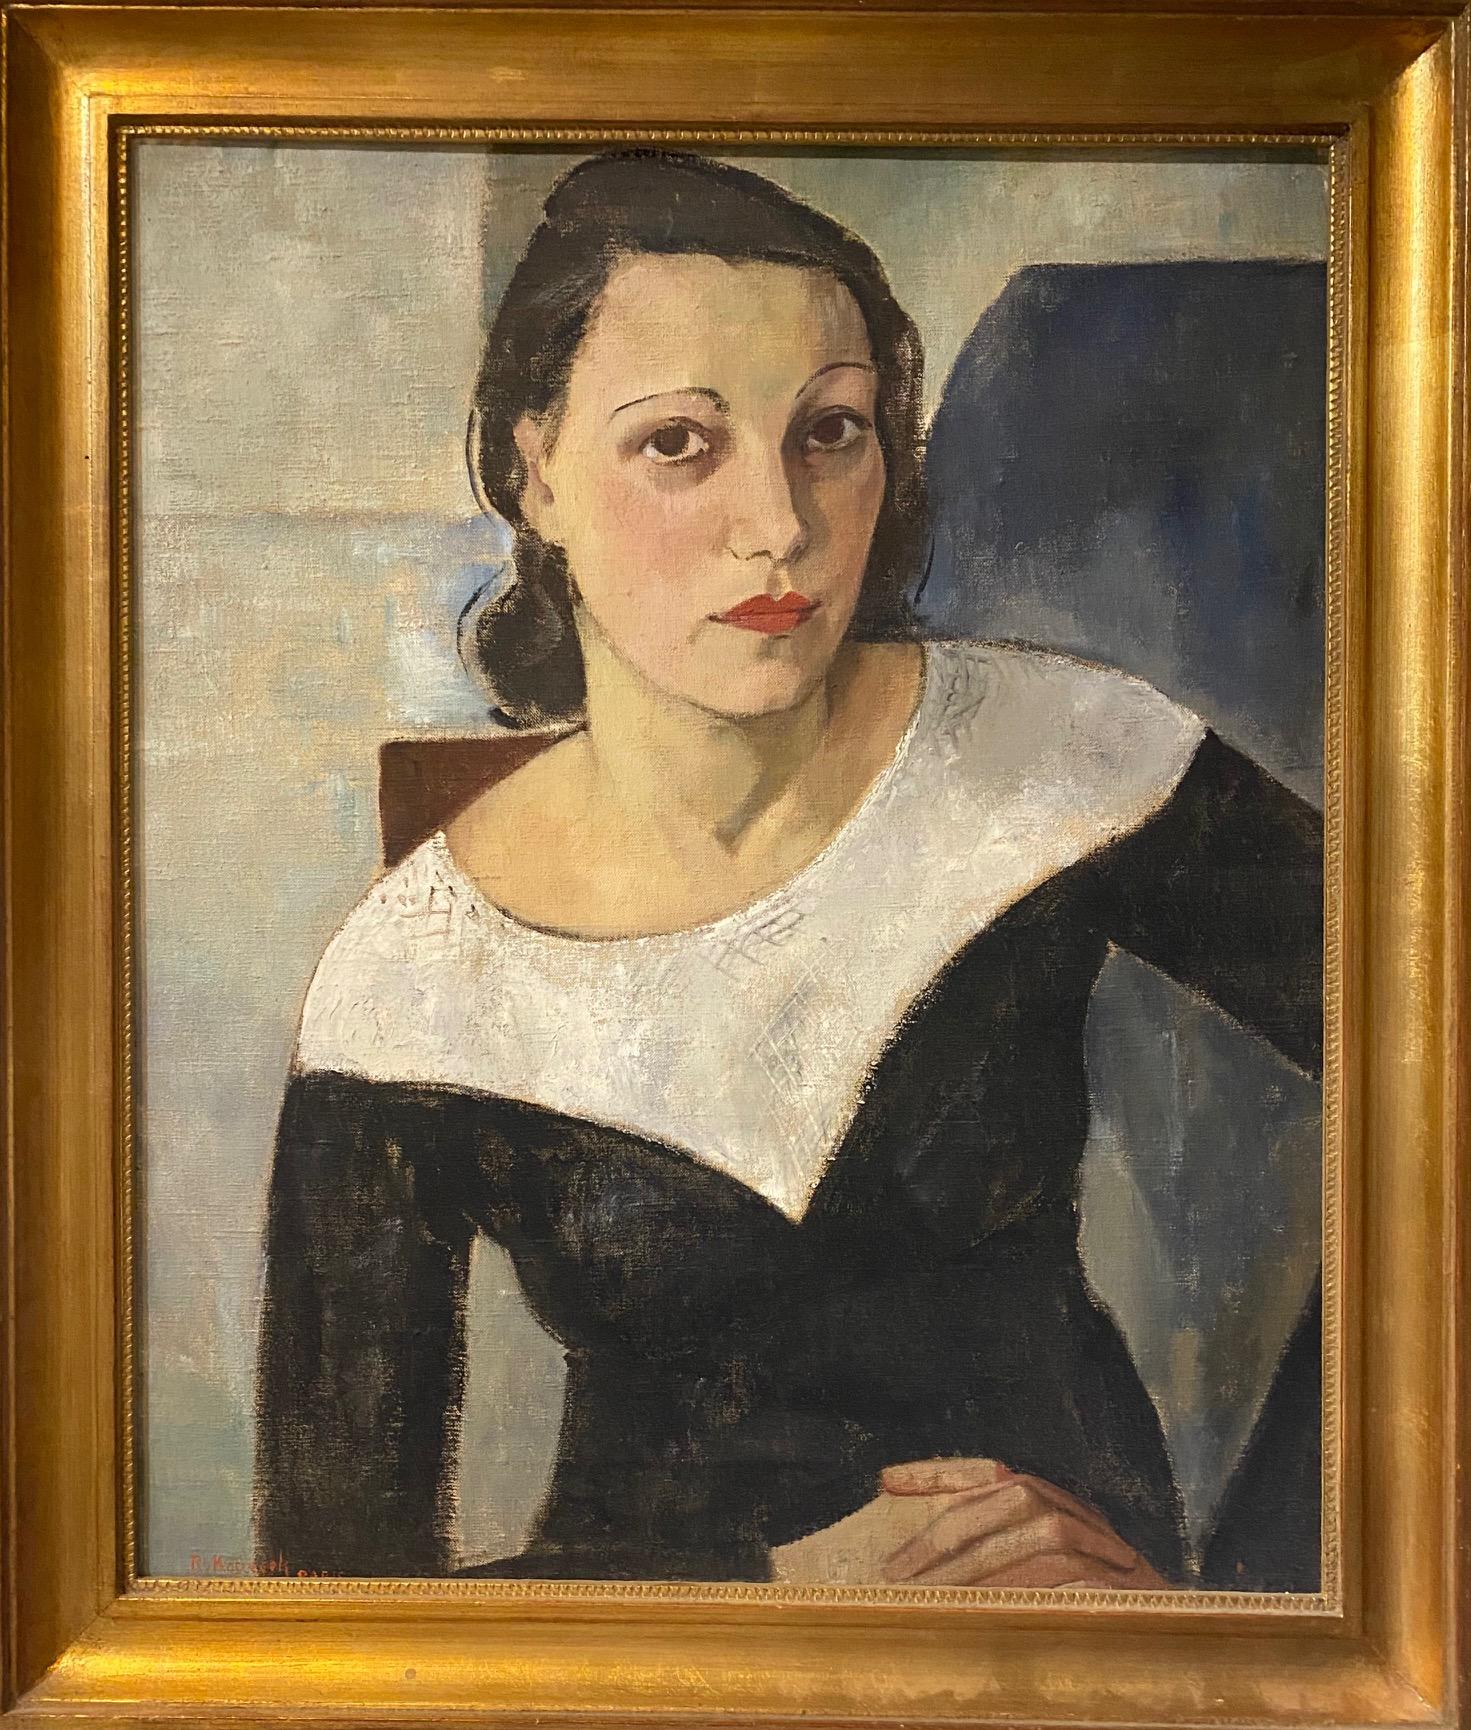 RV. KOPECEK Portrait Painting - Woman portrait by RV. Kopecek - Oil on canvas 53x63 cm